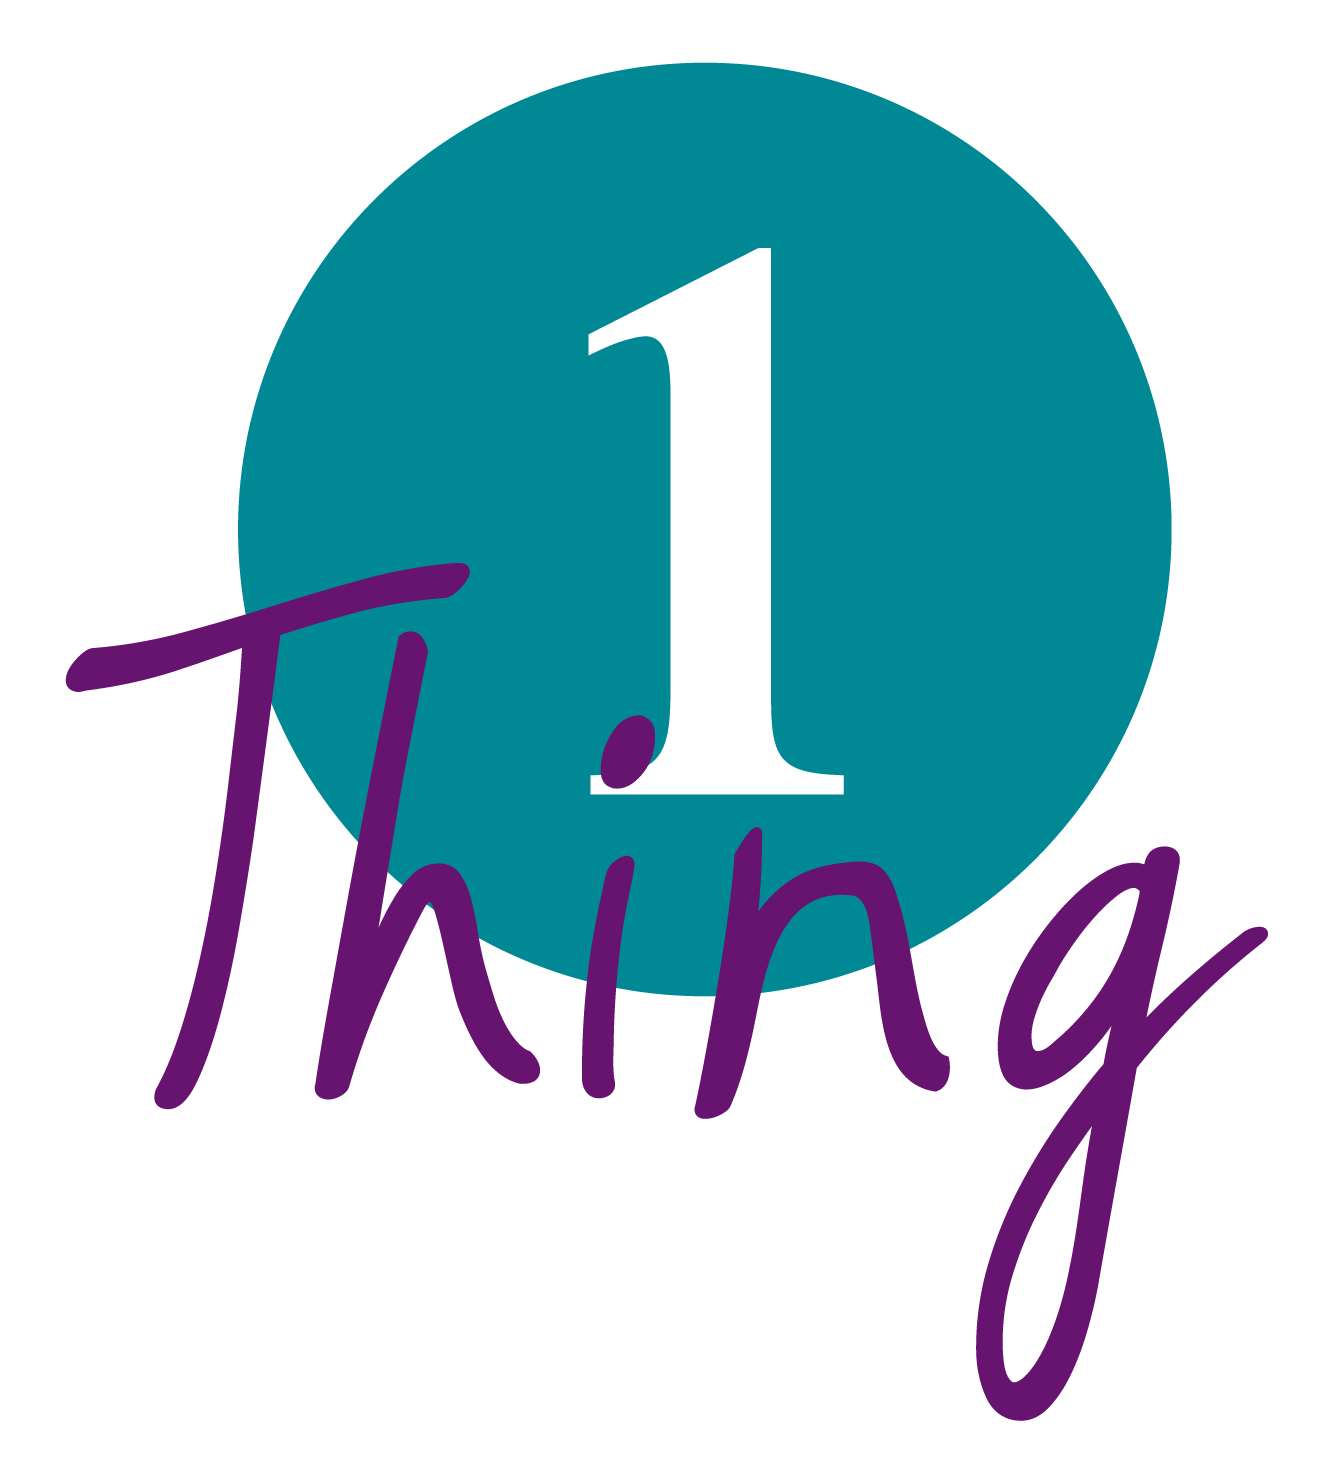 Vertical #1Thing logo